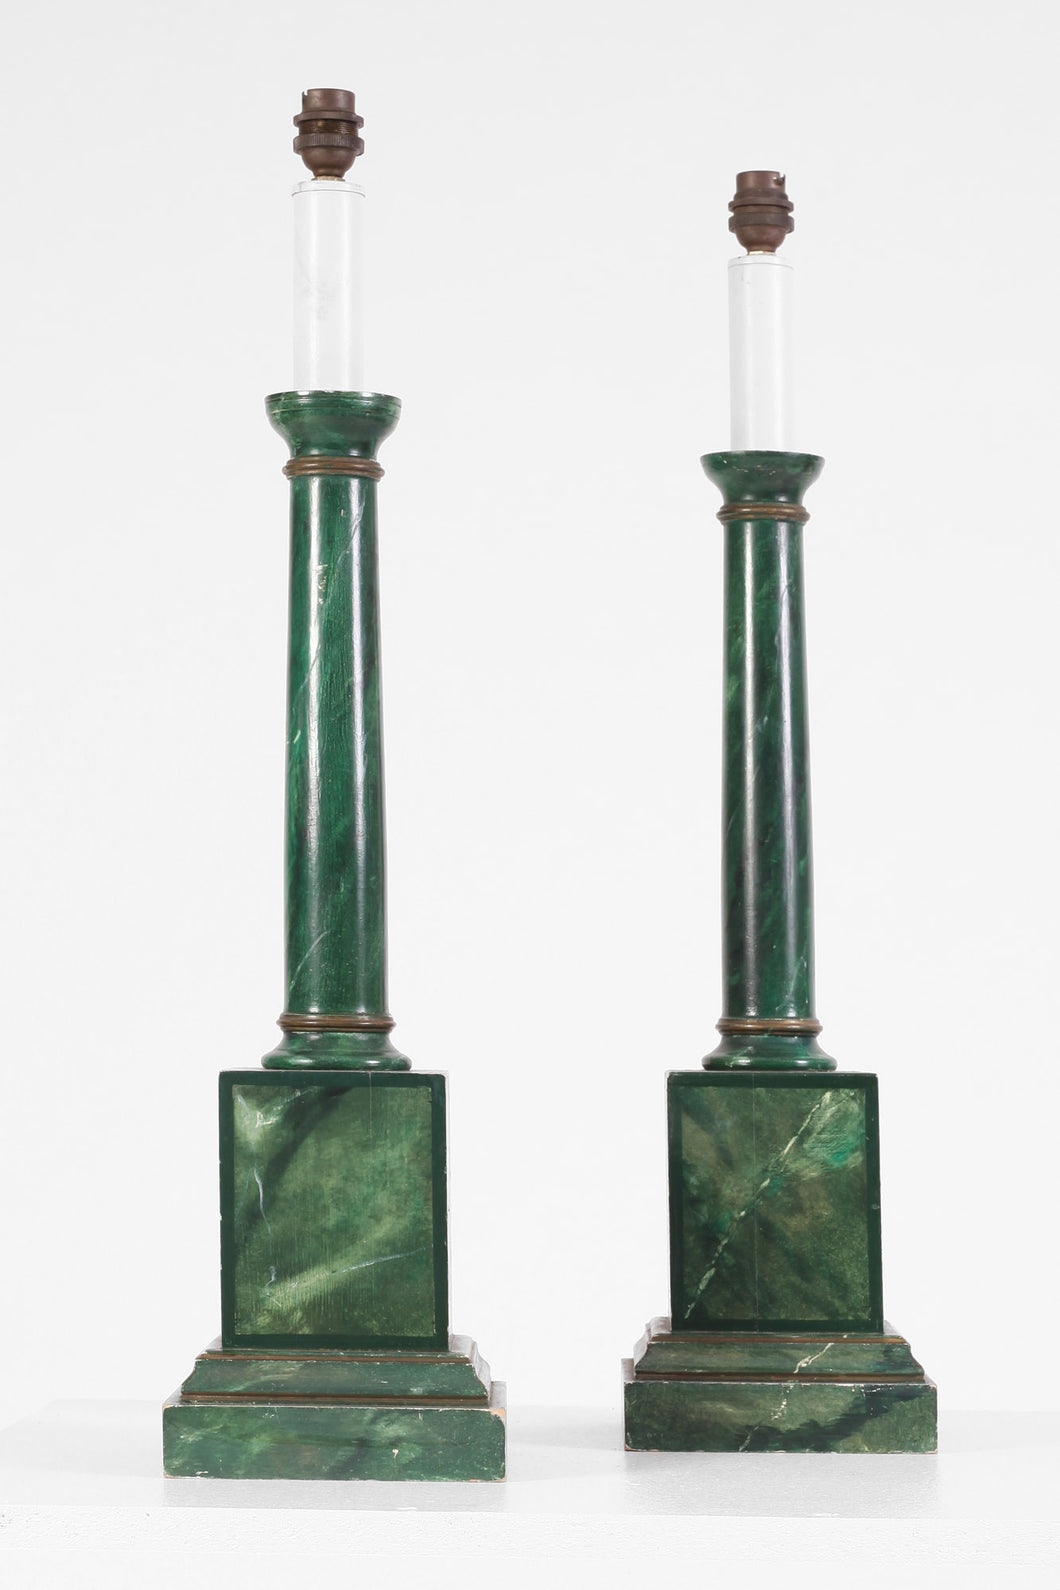 Pair of Bayonette Table Lamps (no lamp shade)